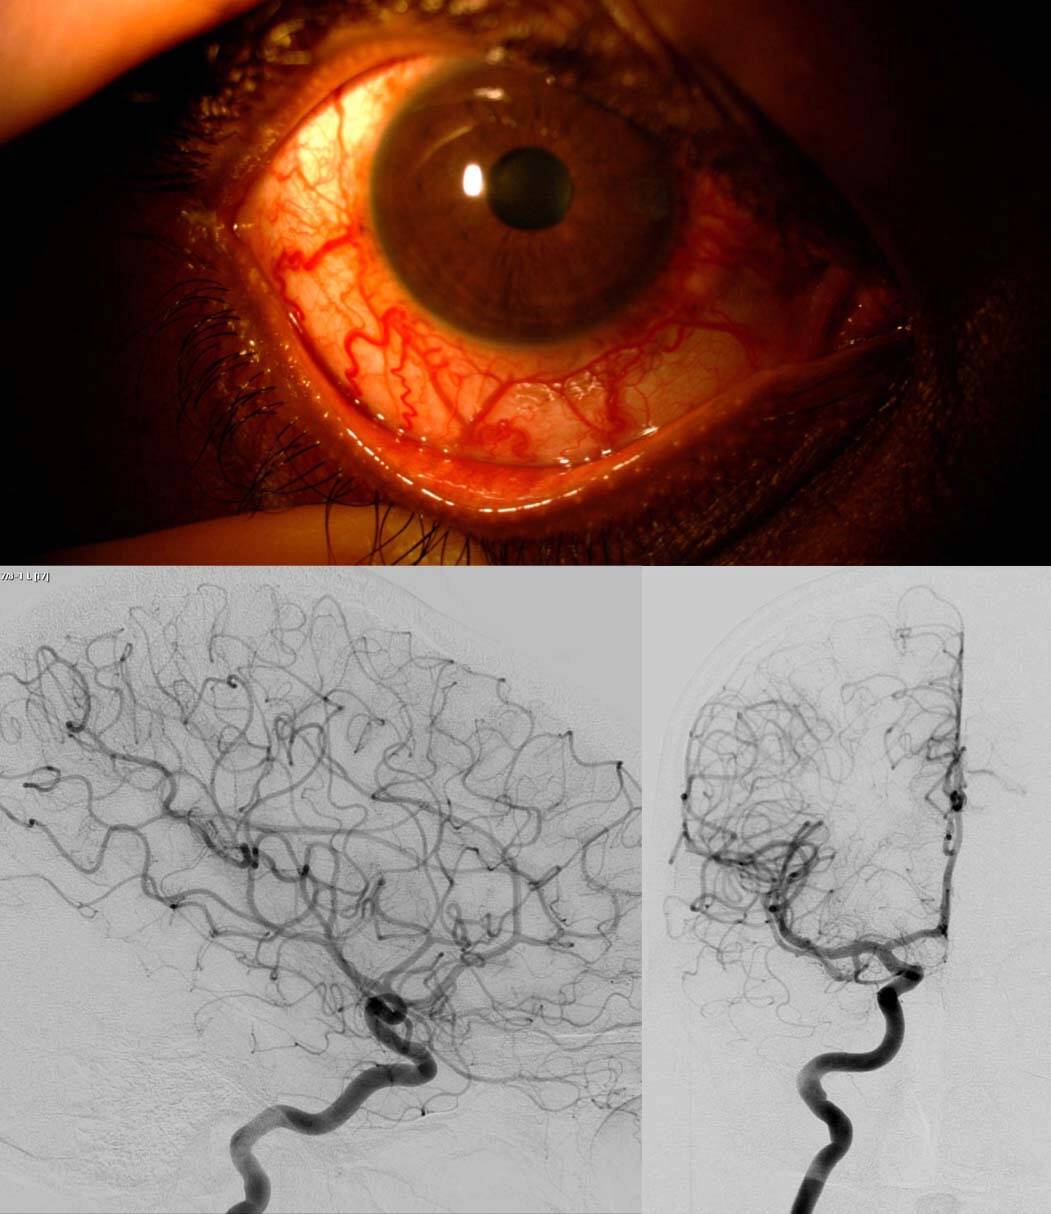 Figure 2. Hypertonie et glaucome unilatéral de l’œil droit chez un patient de 30 ans connu depuis 5 ans. L’examen retrouve une dilatation des vaisseaux épiscléraux, évocatrice d’un obstacle posttrabéculaire. L’IRM a permis d’éliminer une tumeur gênant le drainage veineux et n’a pas retrouvé de fistule. Une angiographie cérébrale a dû être réalisée pour confirmer l’absence de fistule durale, dont le traitement aurait permis de mieux contrôler le glaucome. Certaines fistules durales peuvent se boucher spontanément et laisser de manière séquellaire une dilatation des vaisseaux épiscléraux et un glaucome qui s’est autonomisé. 
